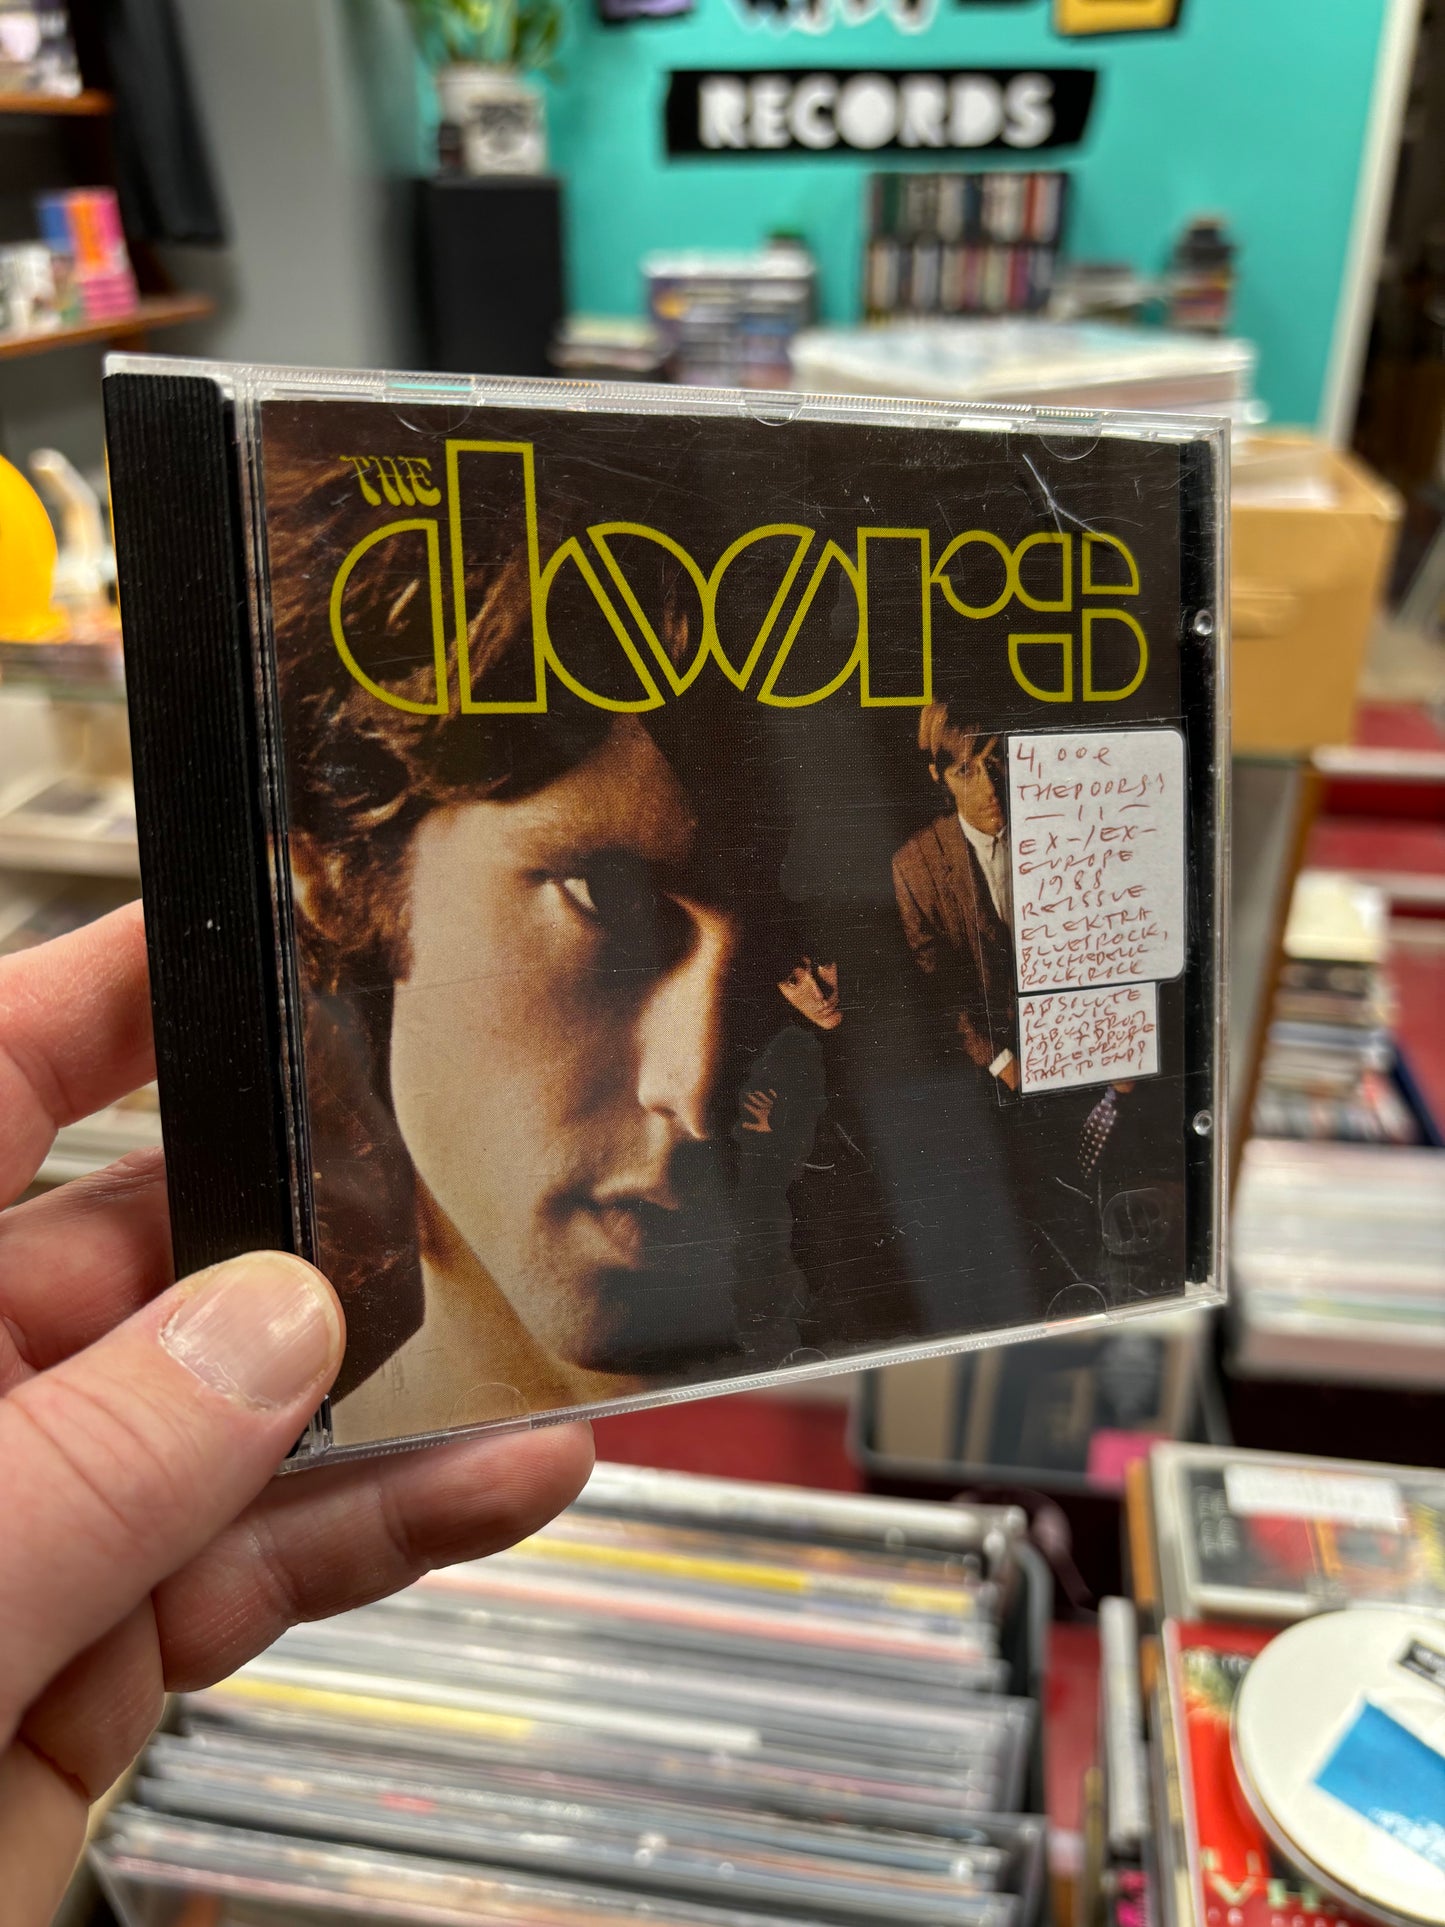 The Doors: The Doors, CD, reissue, Europe 1988